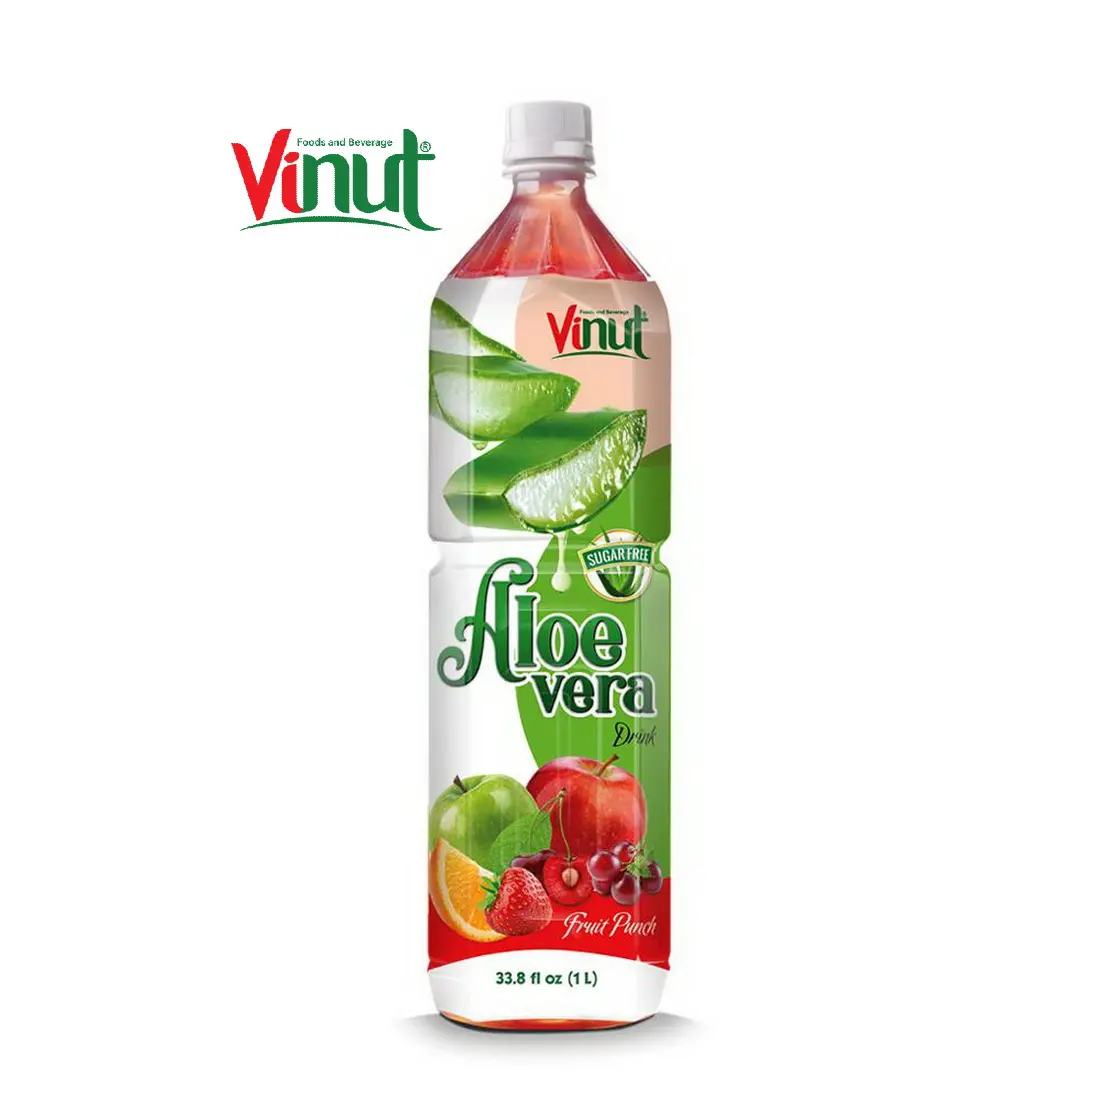 1L VINUT 병에 든 알로에 베라 음료 과일 펀치 설탕 무료 베스트 셀러 무료 샘플 개인 라벨 OEM ODM HALAL BRC